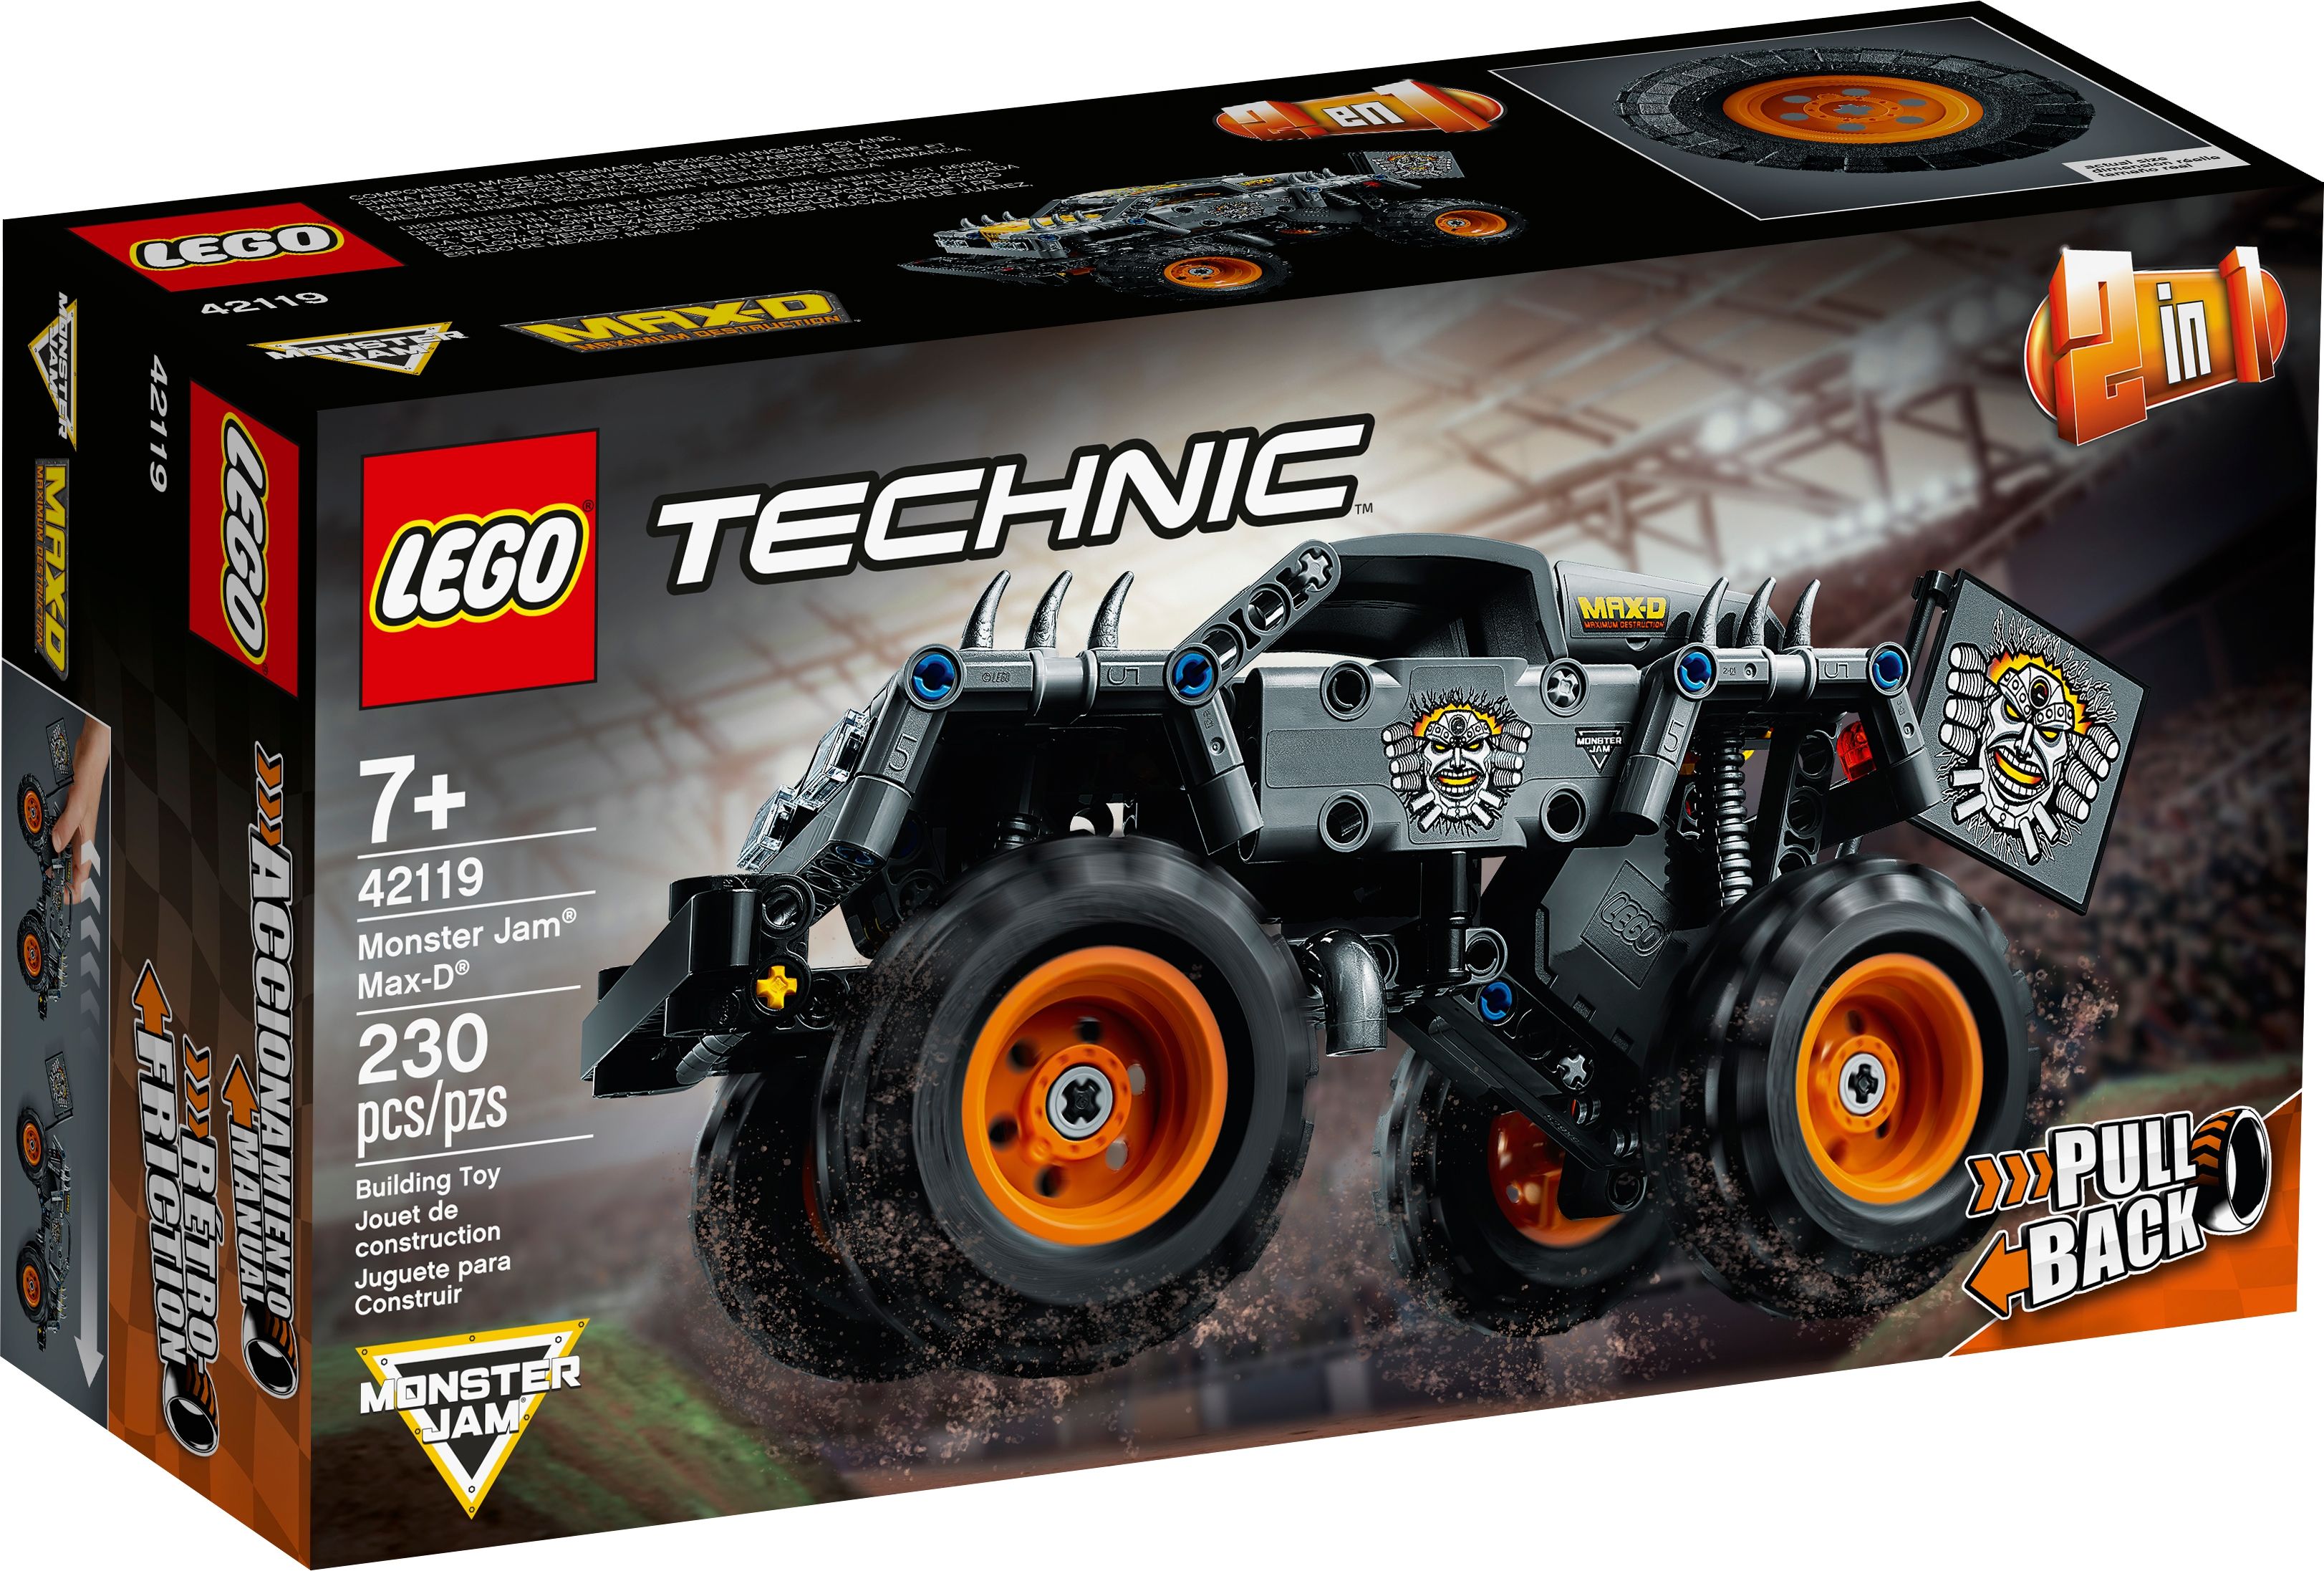 LEGO Technic 42119 Monster Jam® Max-D® LEGO_42119_box1_v39.jpg